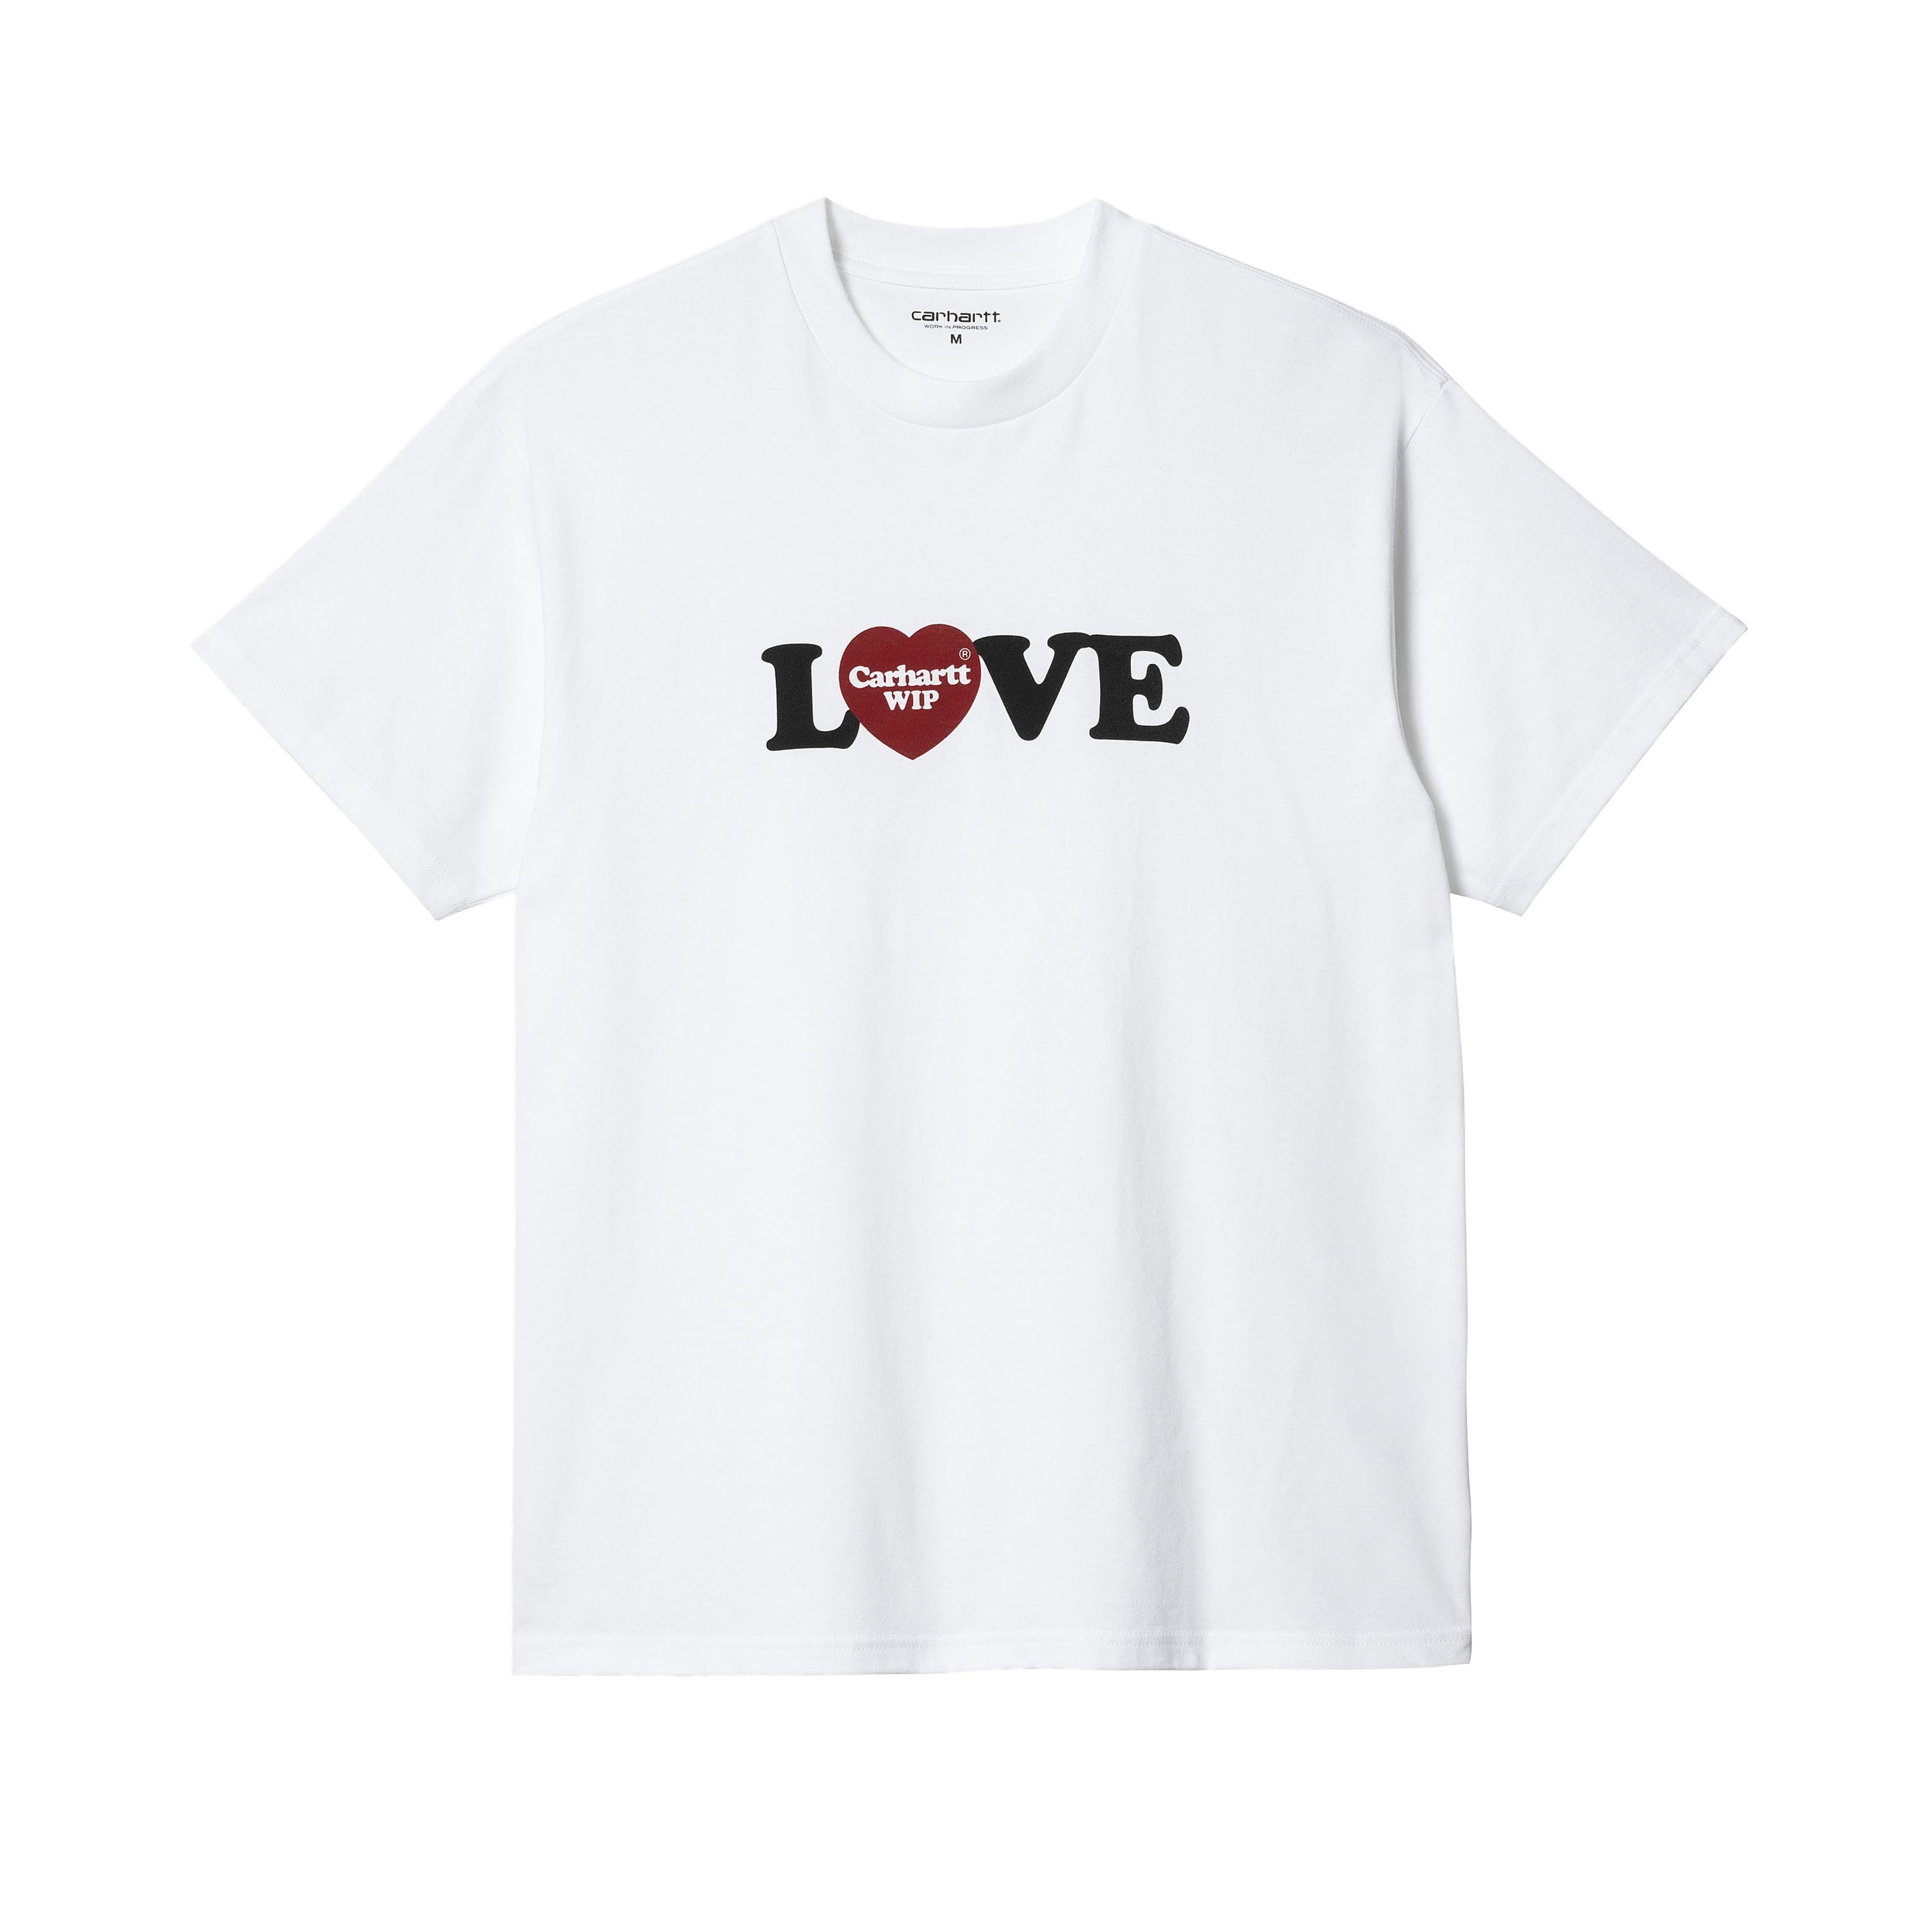 Carhartt WIP Love T-Shirt (White) - I032179.02.XX.03 - Consortium